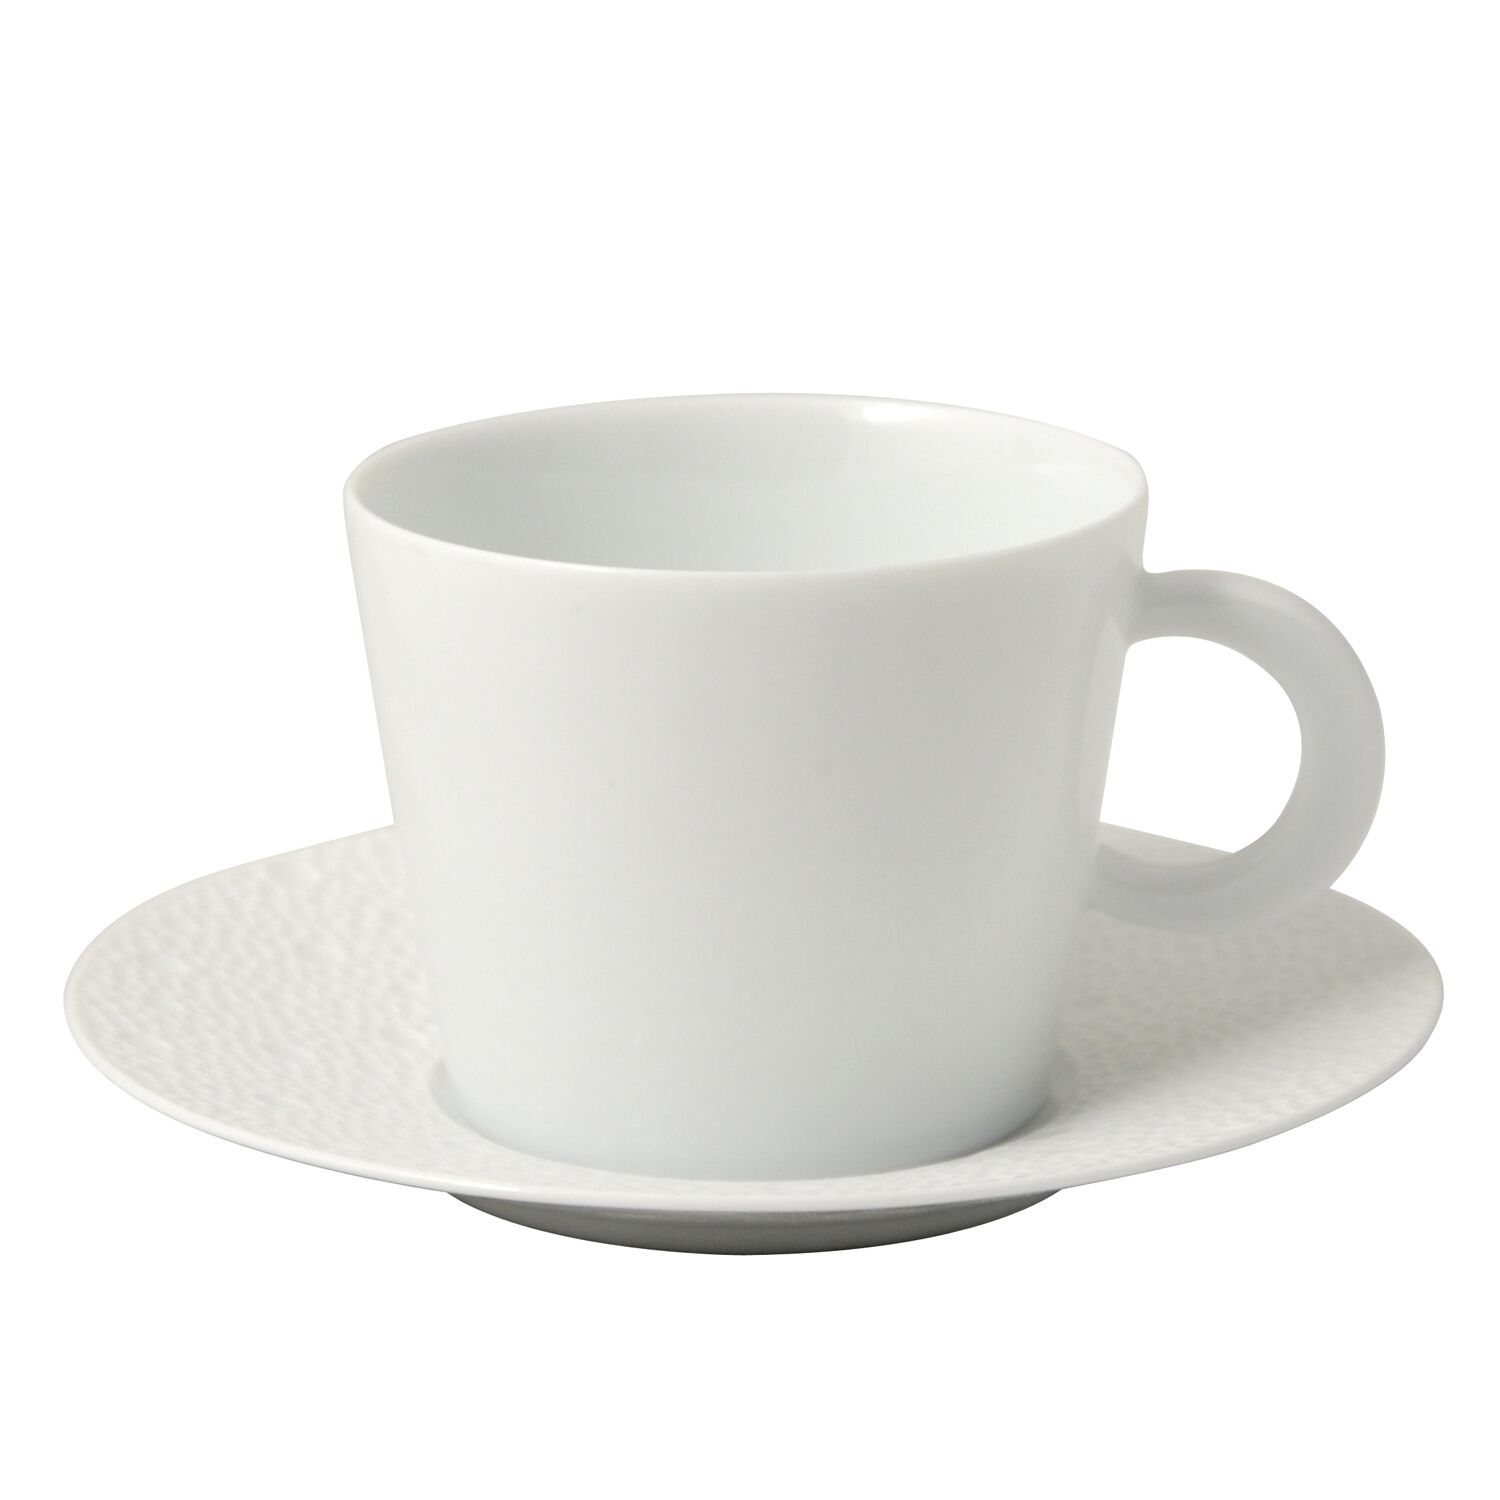 Tazza da tè Ecume white | Tazza da tè in porcellana | Tazza da tè Bernardaud